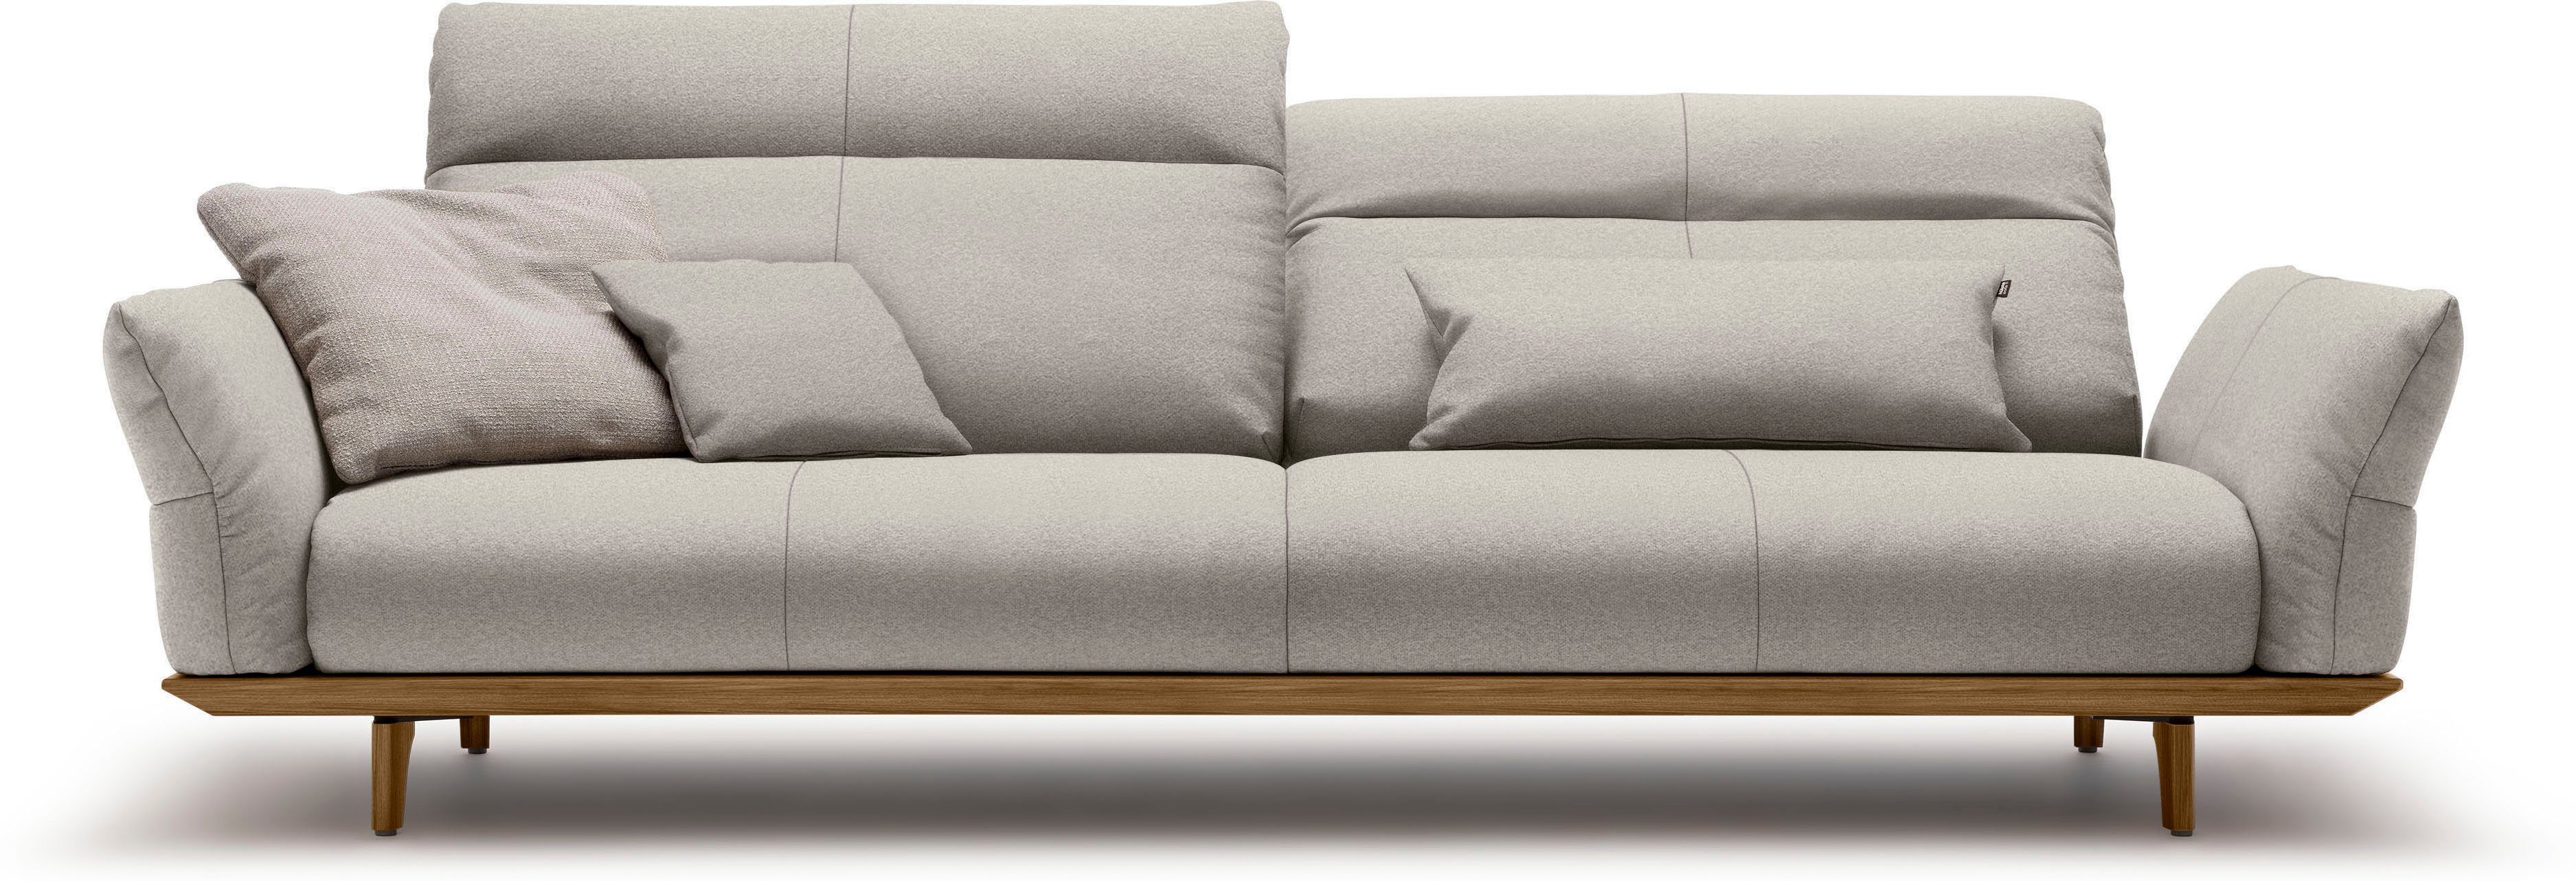 hülsta sofa 4-Sitzer hs.460, Sockel in Nussbaum, Füße Nussbaum, Breite 248 cm